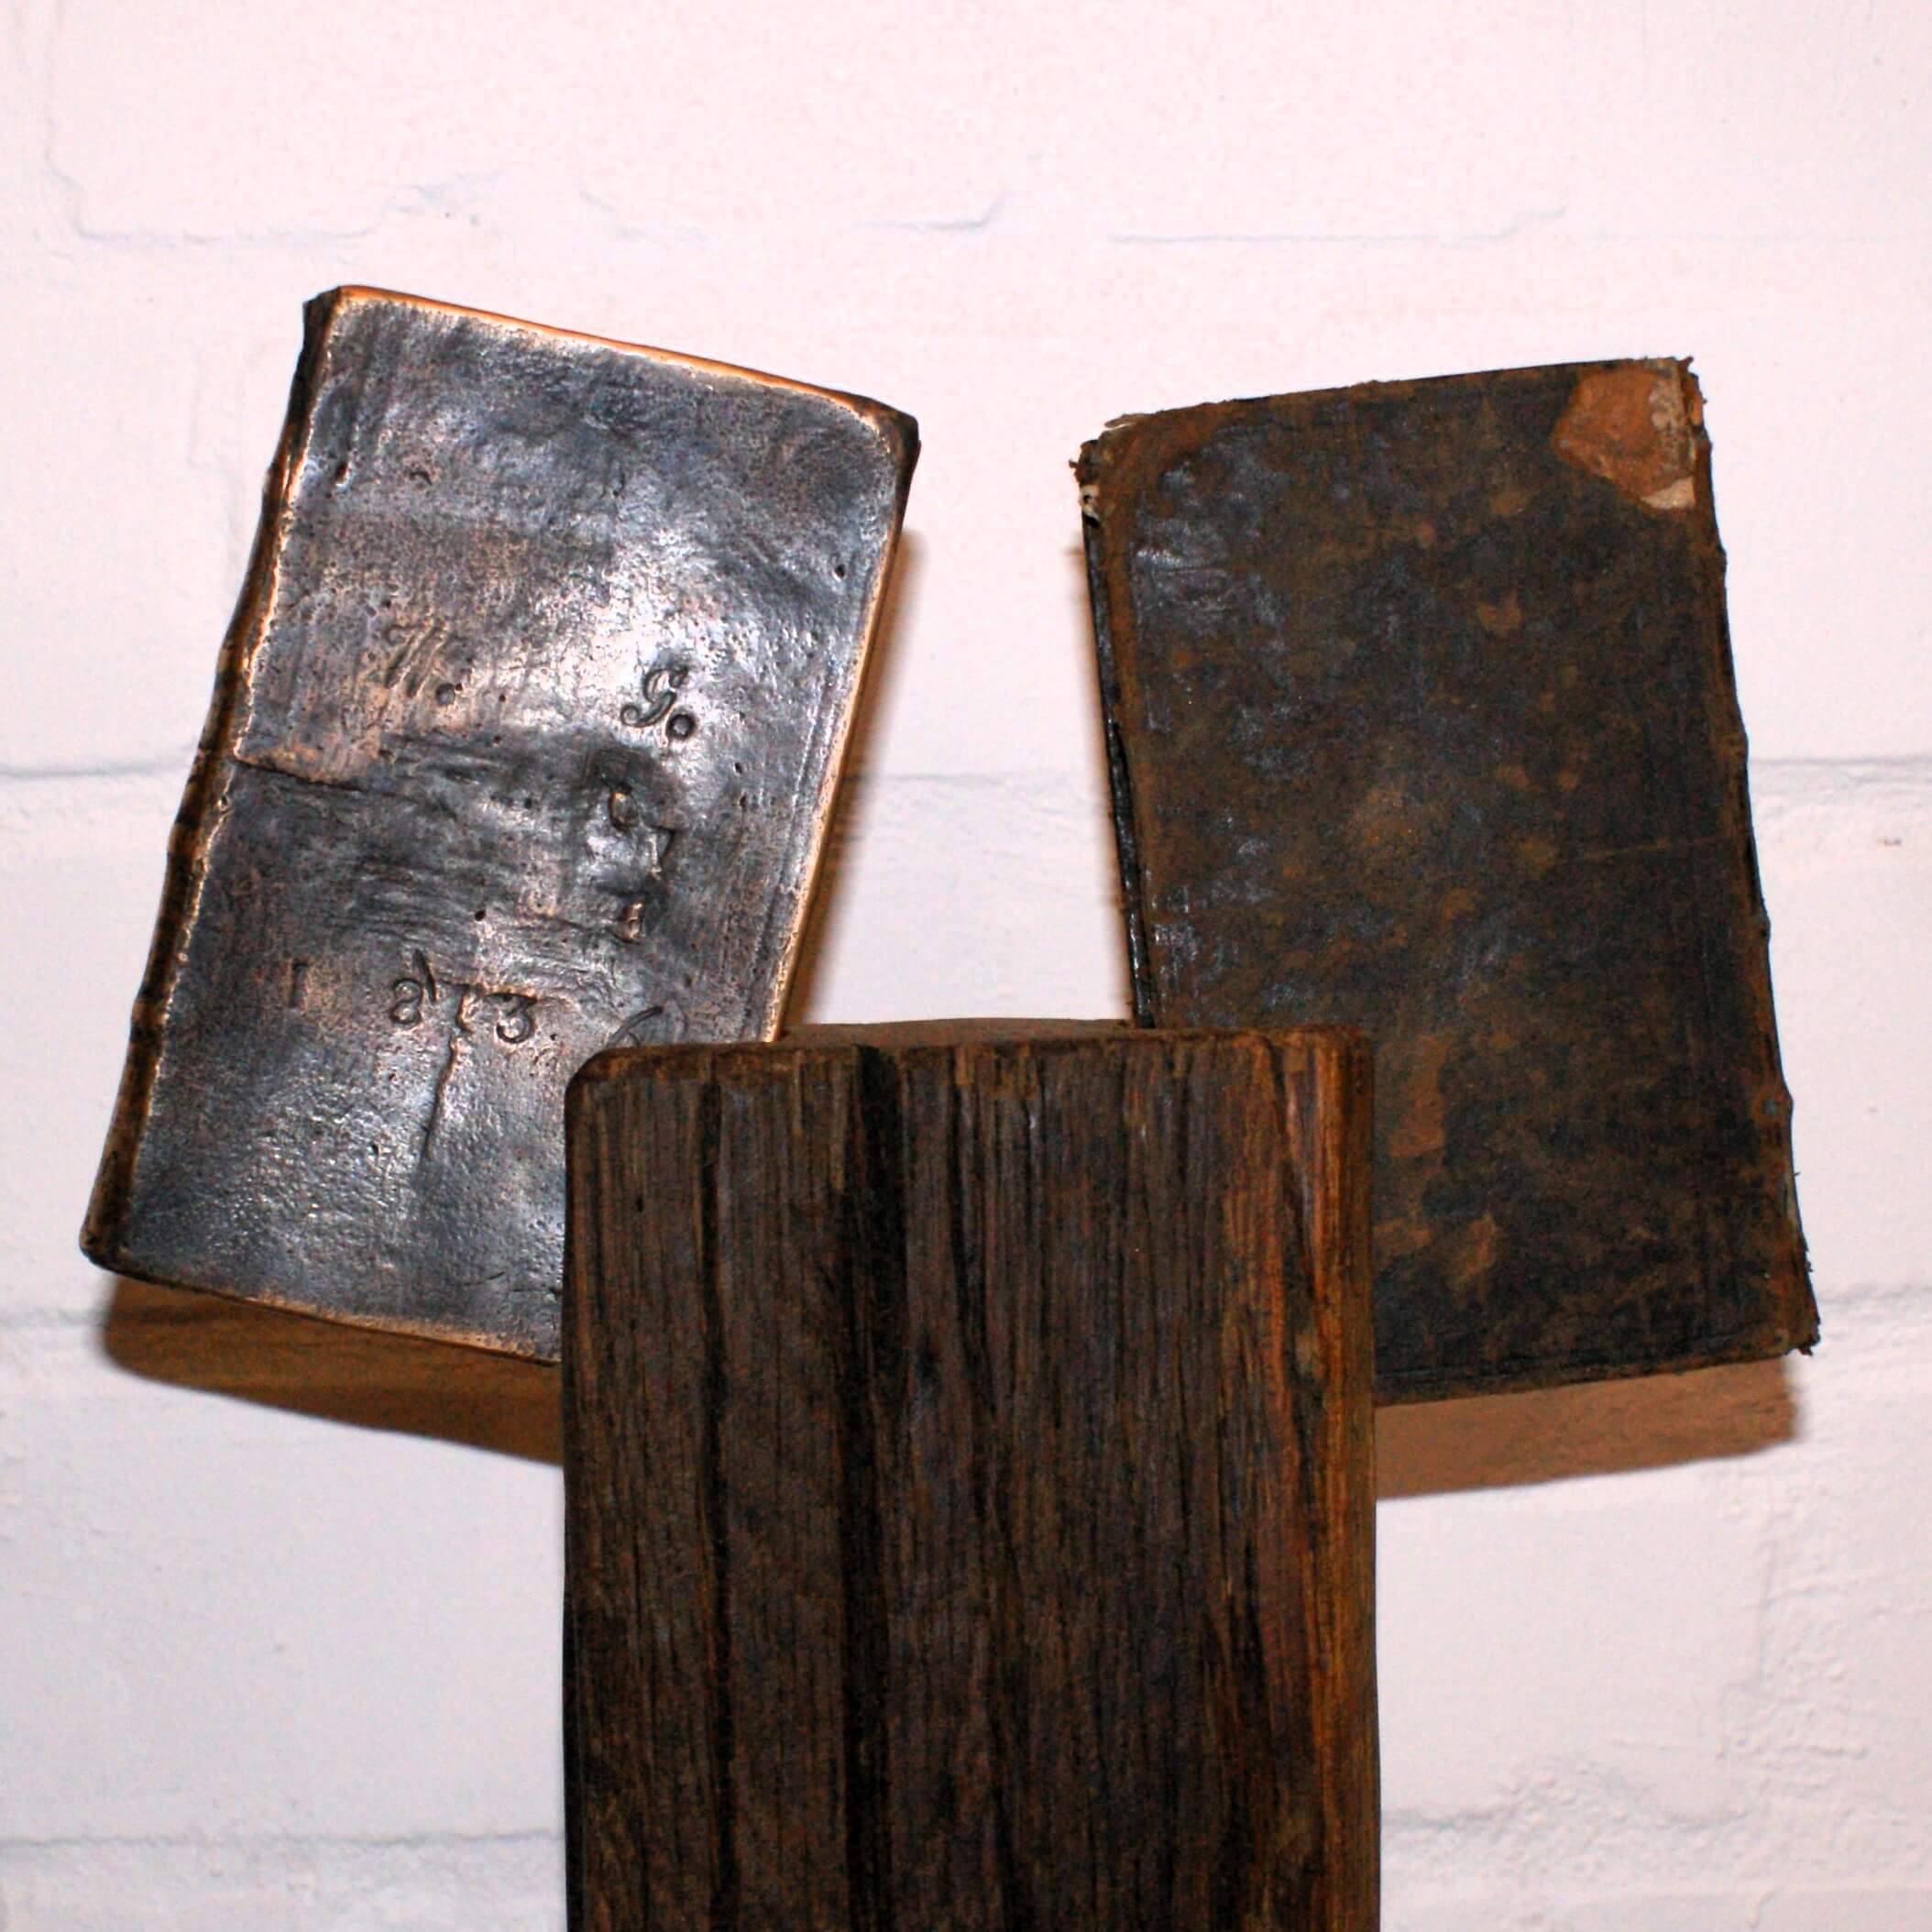 Holzfigur hält zwei Bücher aus Bronze und das Original